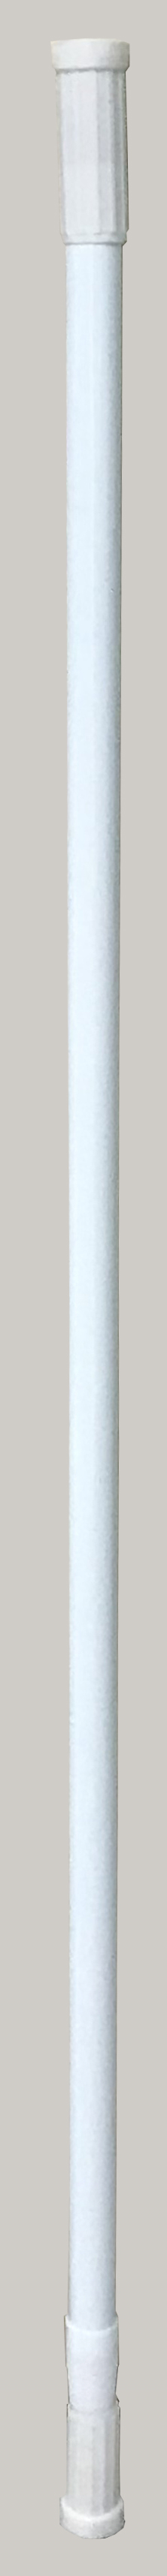 BATH CURTAIN WHITE RODS EXTENSIBLE 140-260cm